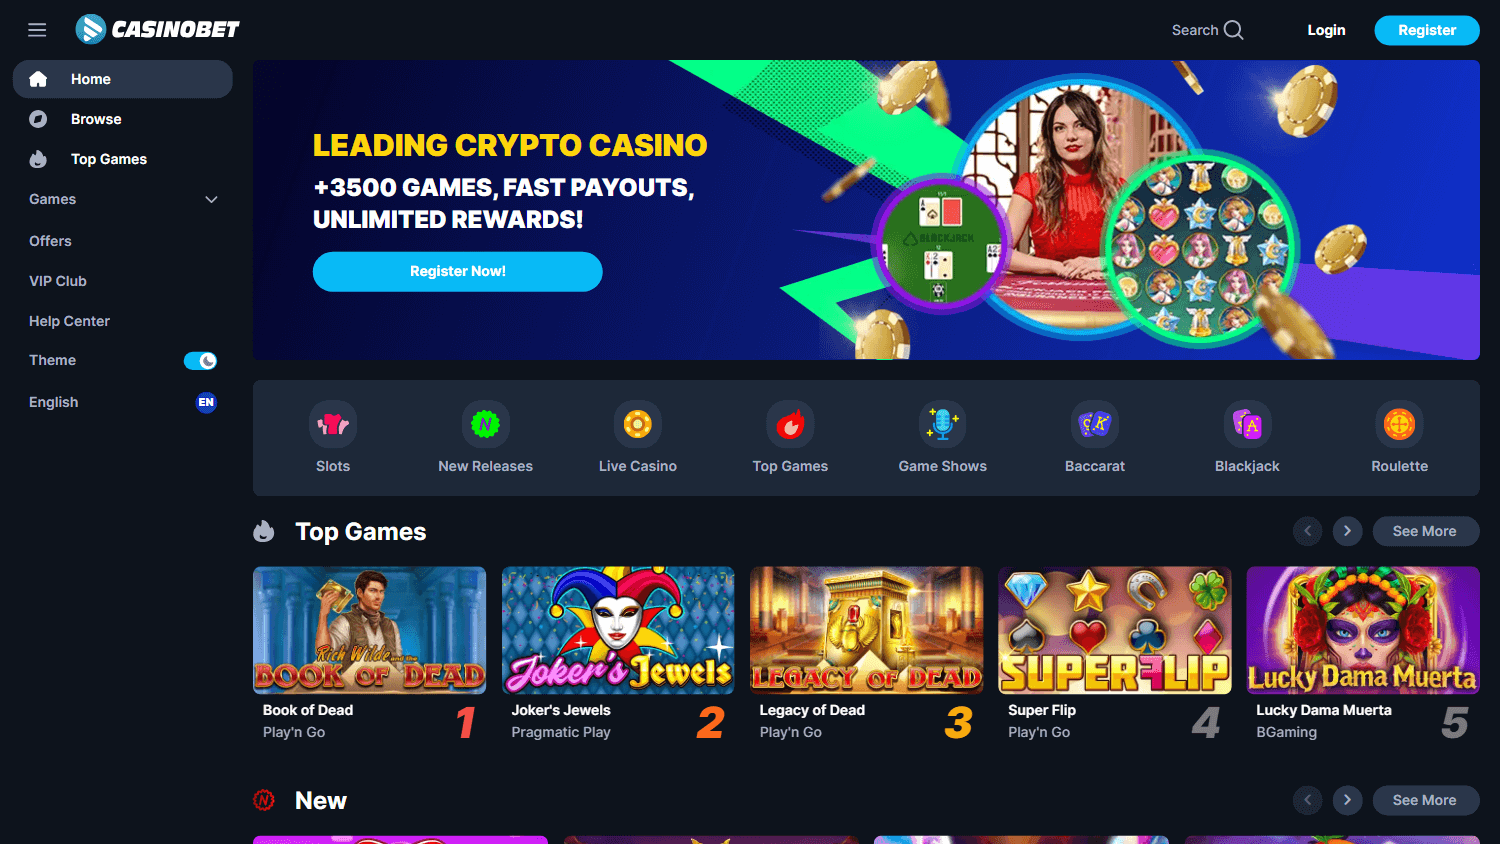 casino_bet_homepage_desktop